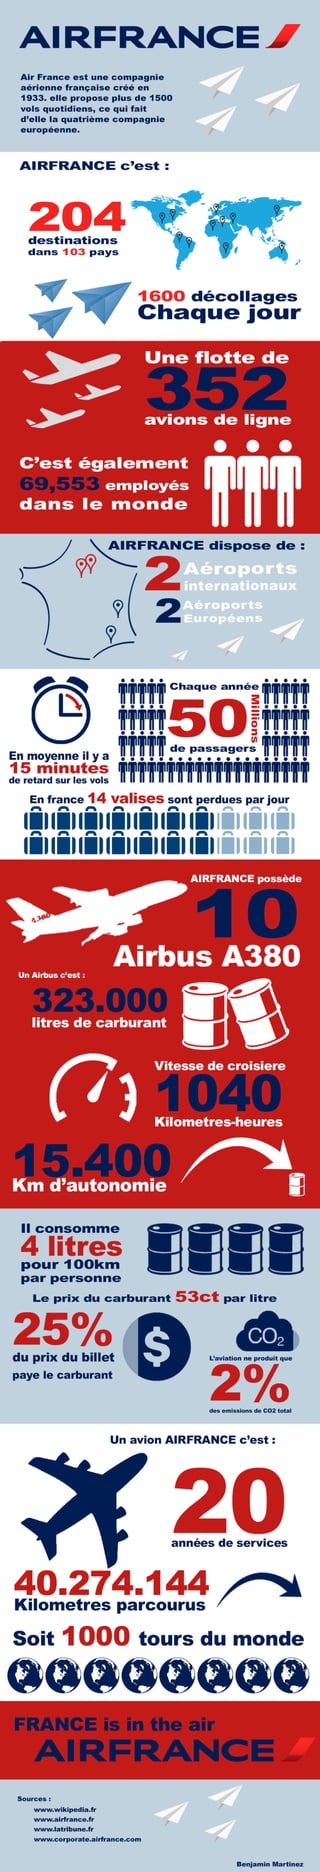 Infographie sur AIR FRANCE réalisée par Benjamin MARTINEZ- MMI - IUT de CHAMBERY